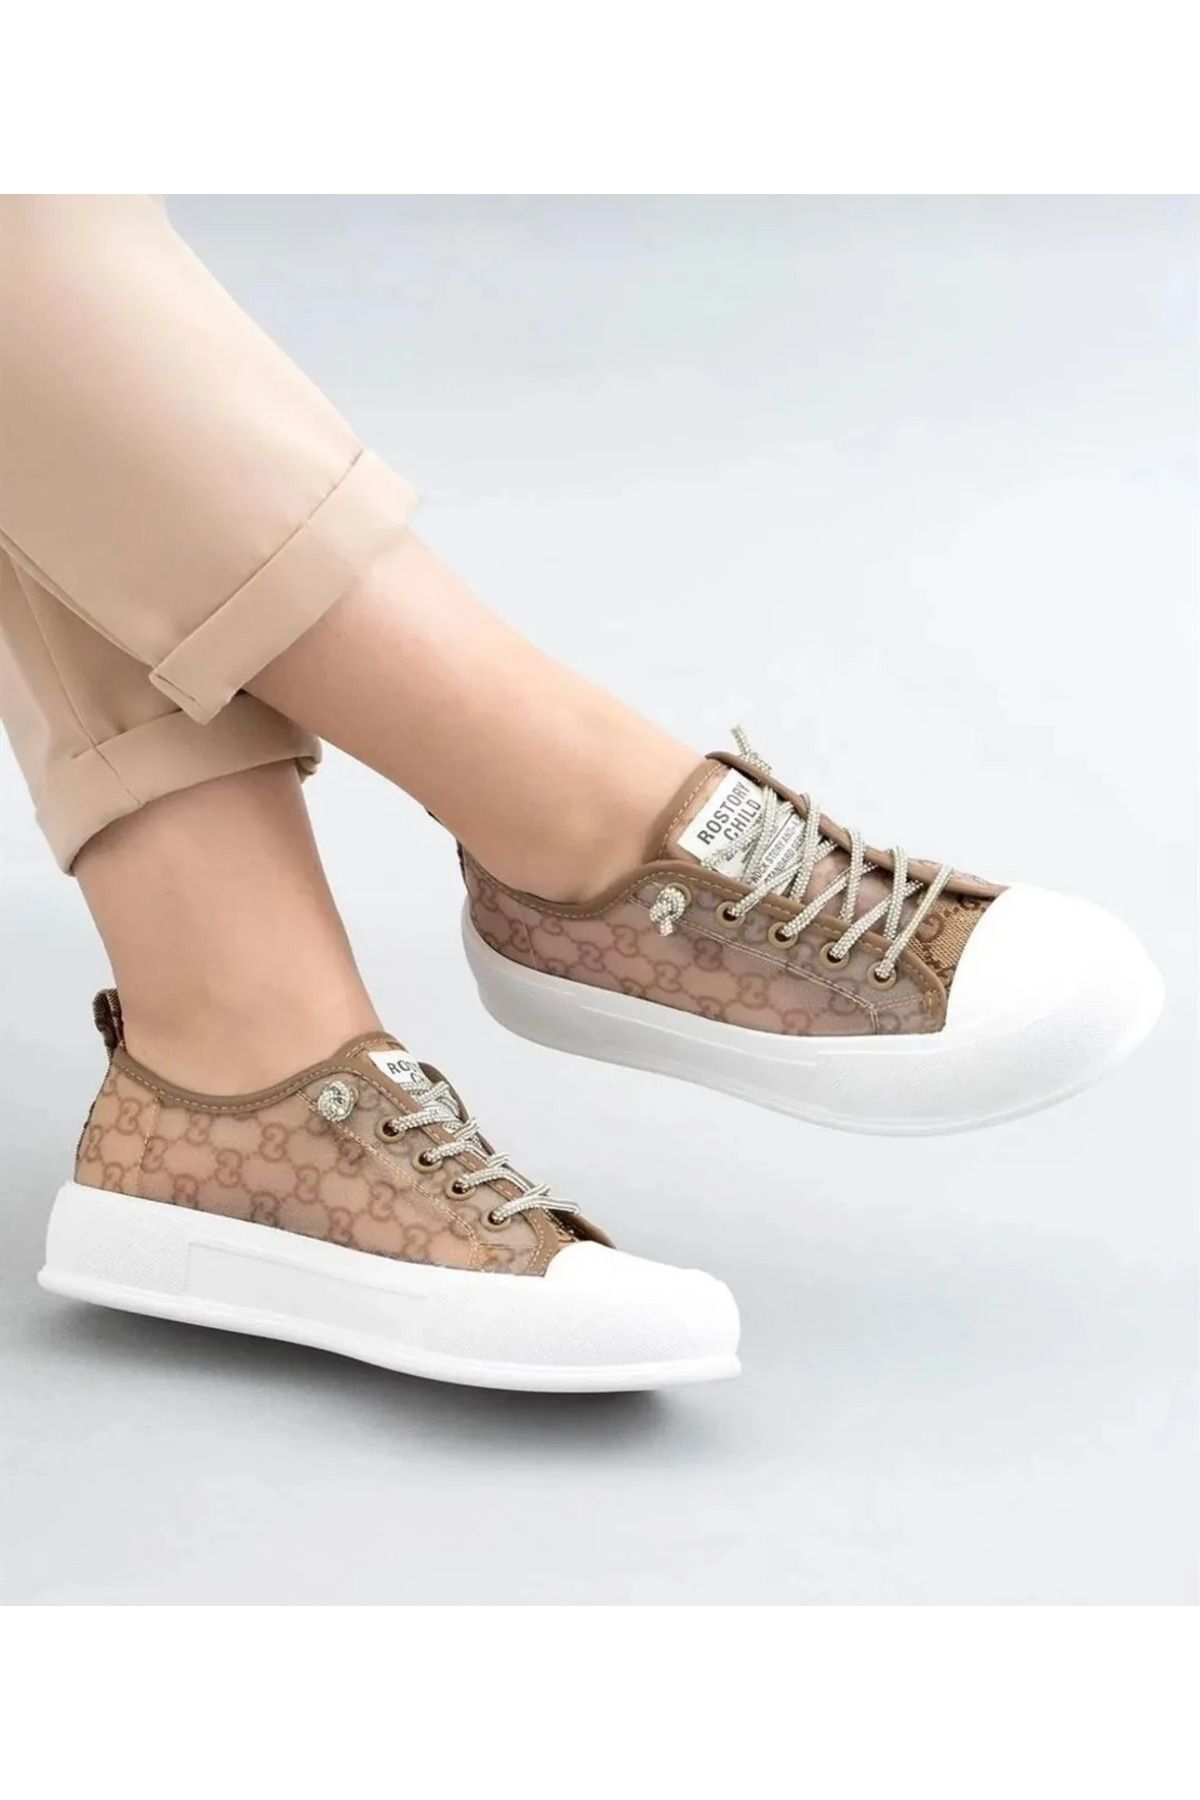 Guja Kadın AstroPace Sneaker Ayakkabı